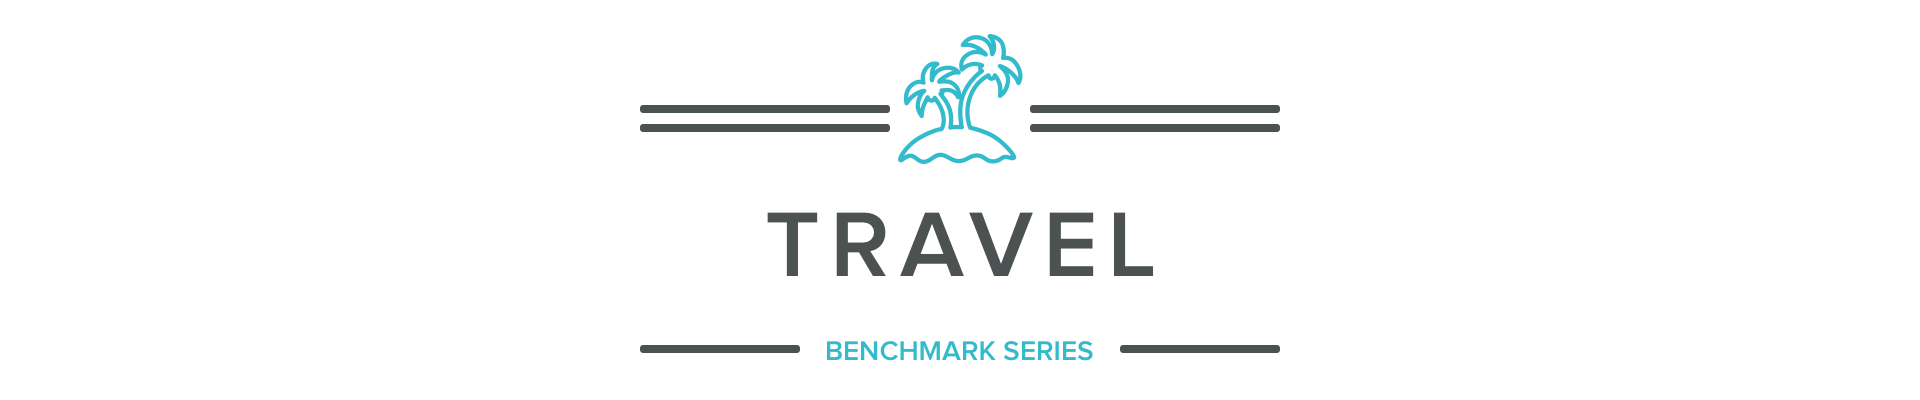 Active travel companies